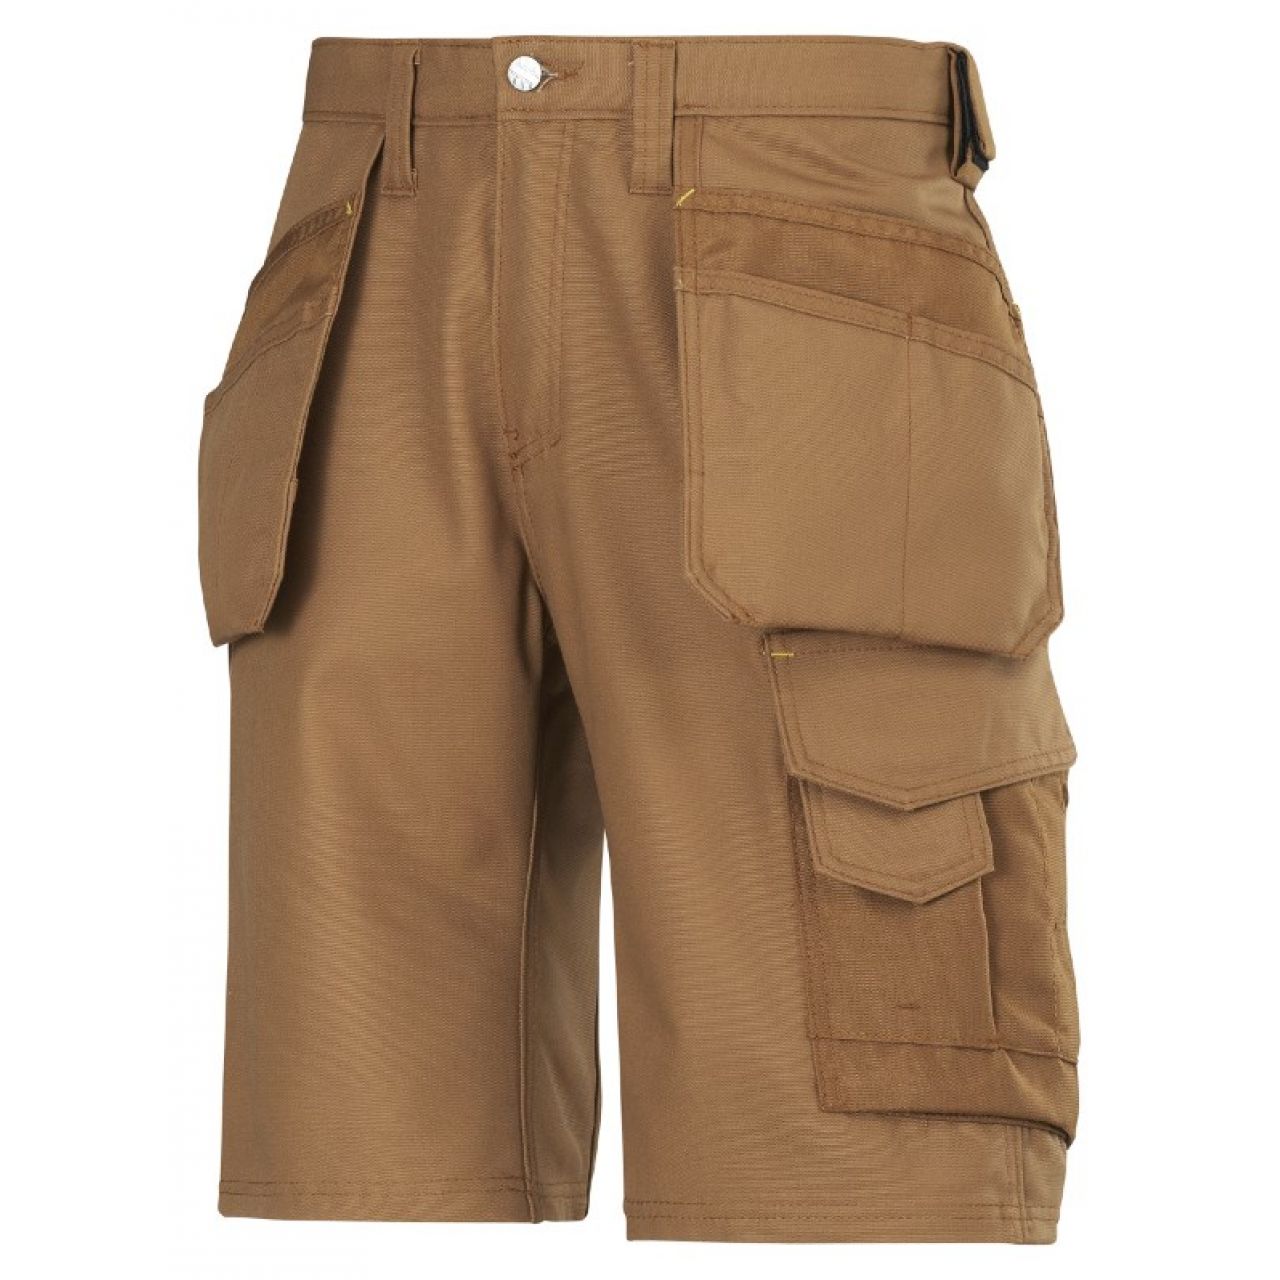 3014 Pantalones cortos de trabajo con bolsillos flotantes Canvas+ marron talla 66